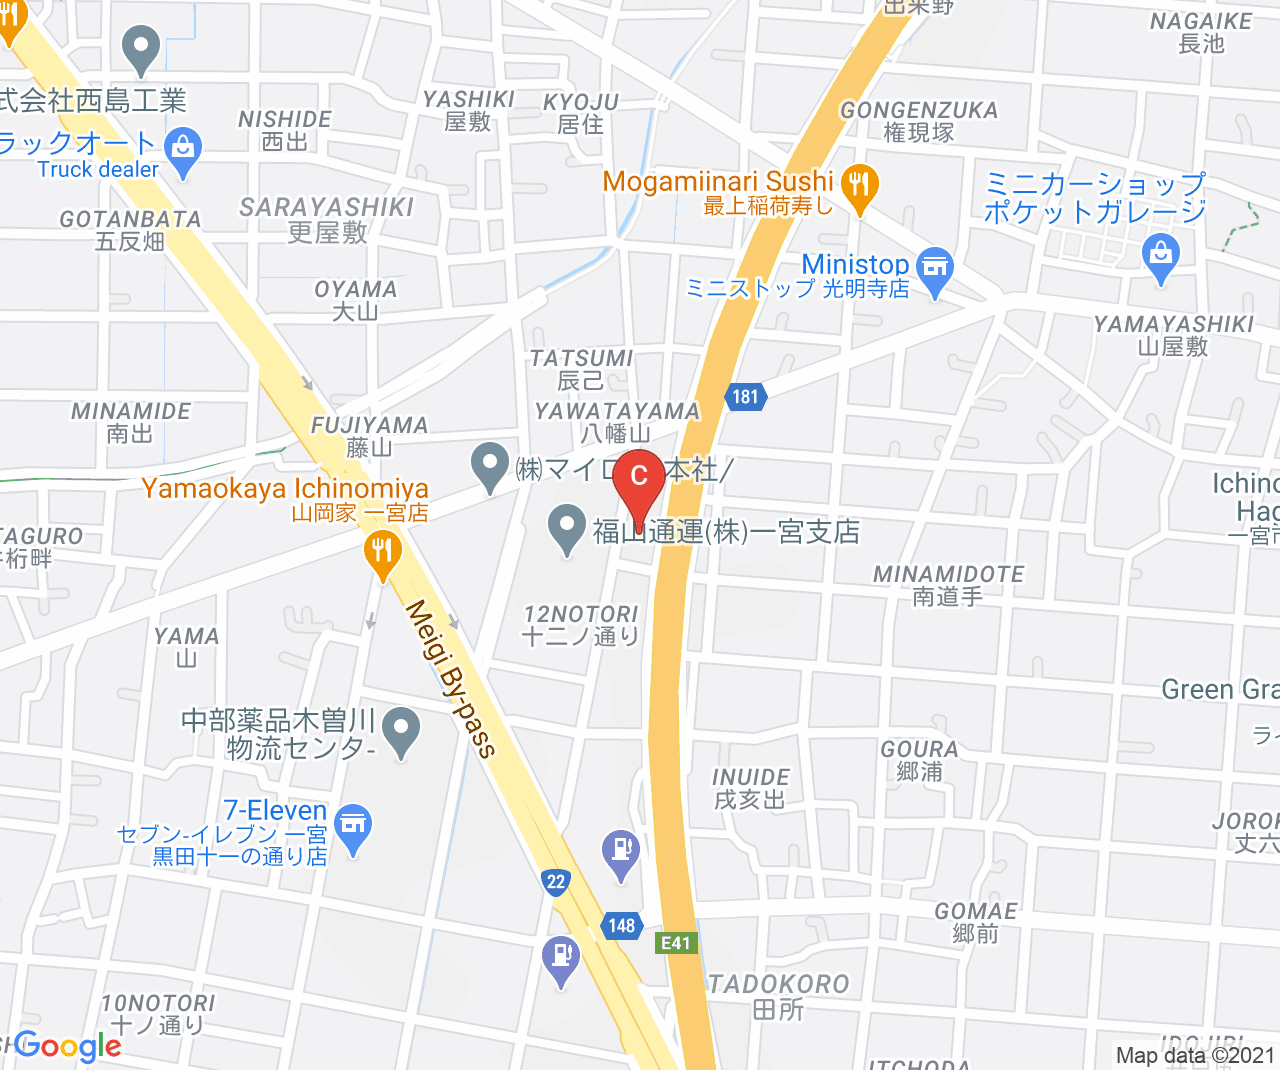 YOUSHIN Co., Ltd. location image